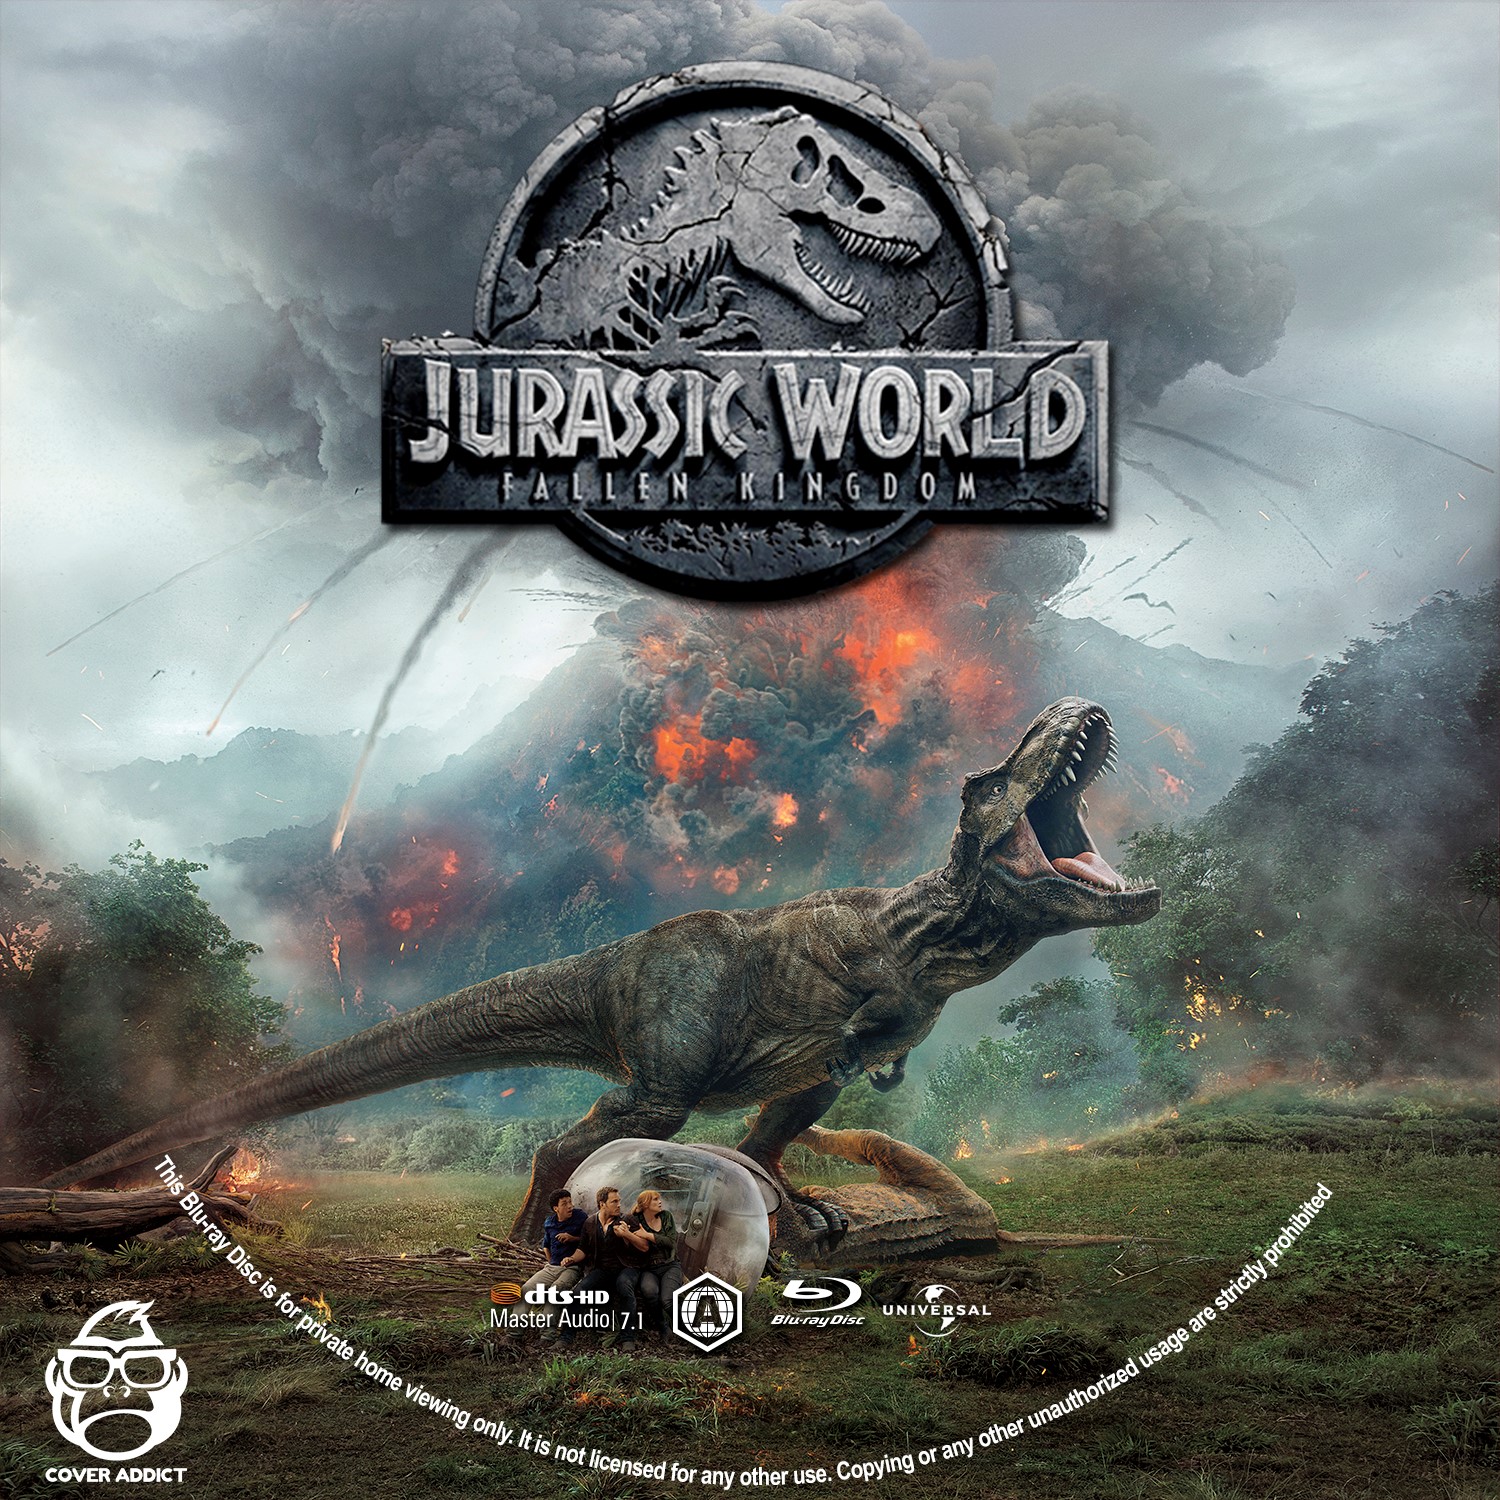 Jurassic World: Fallen Kingdom Bluray Label - Cover Addict 